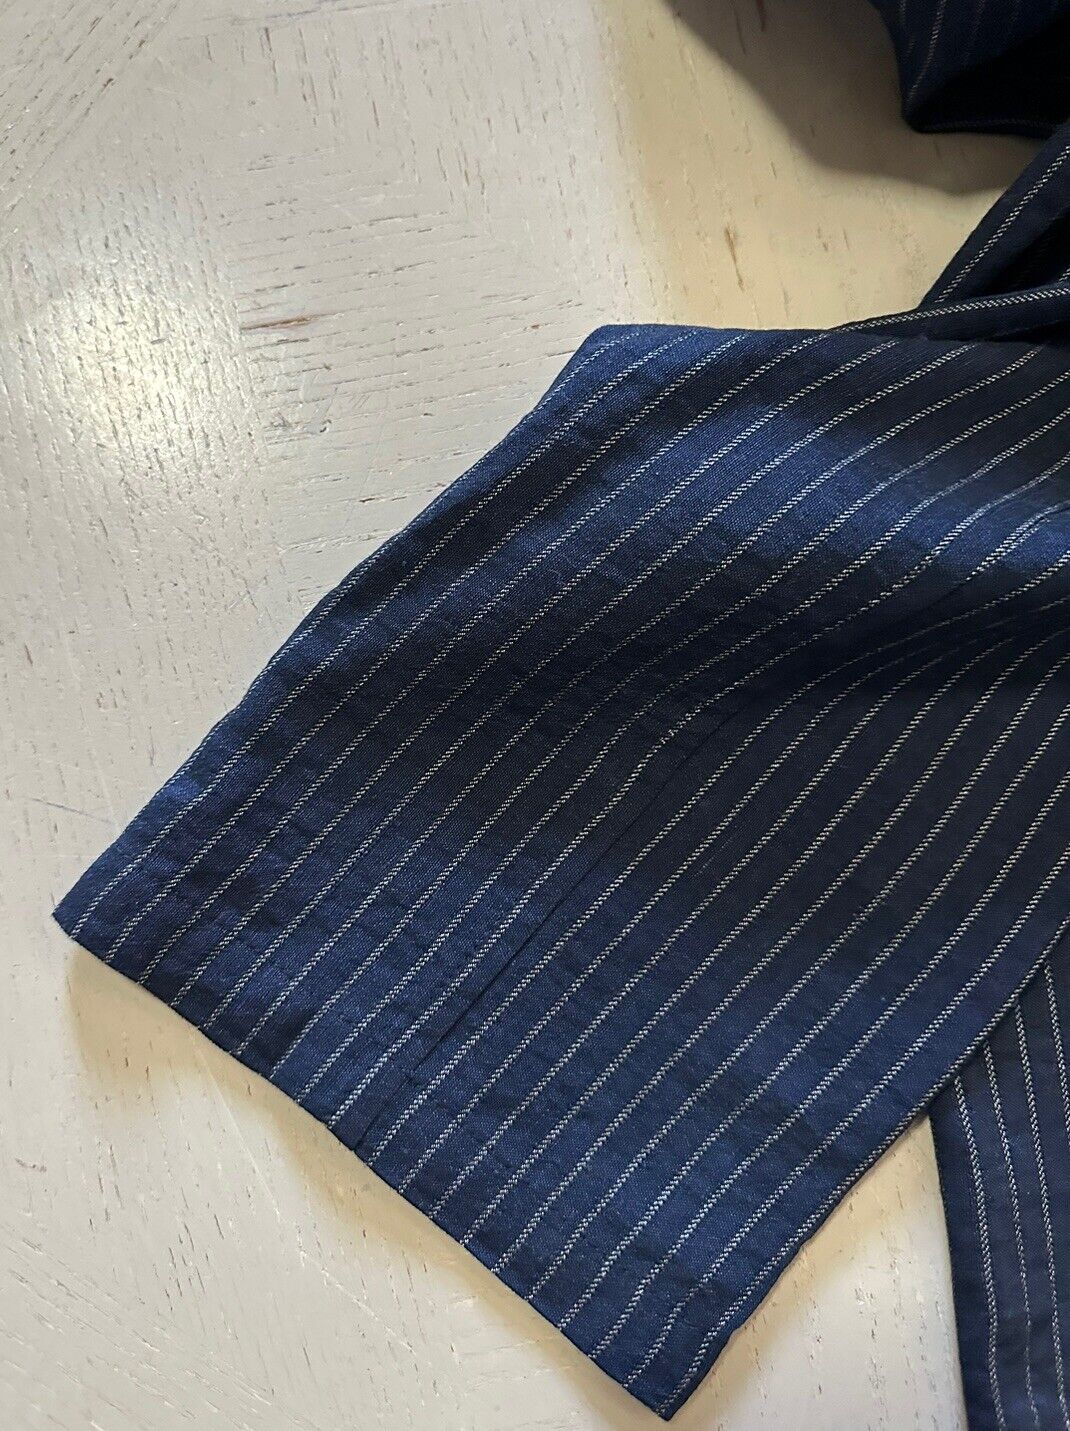 NWT $1195 Giorgio Armani Mens Pants Striped Blue 34 US/50 Eu Italy